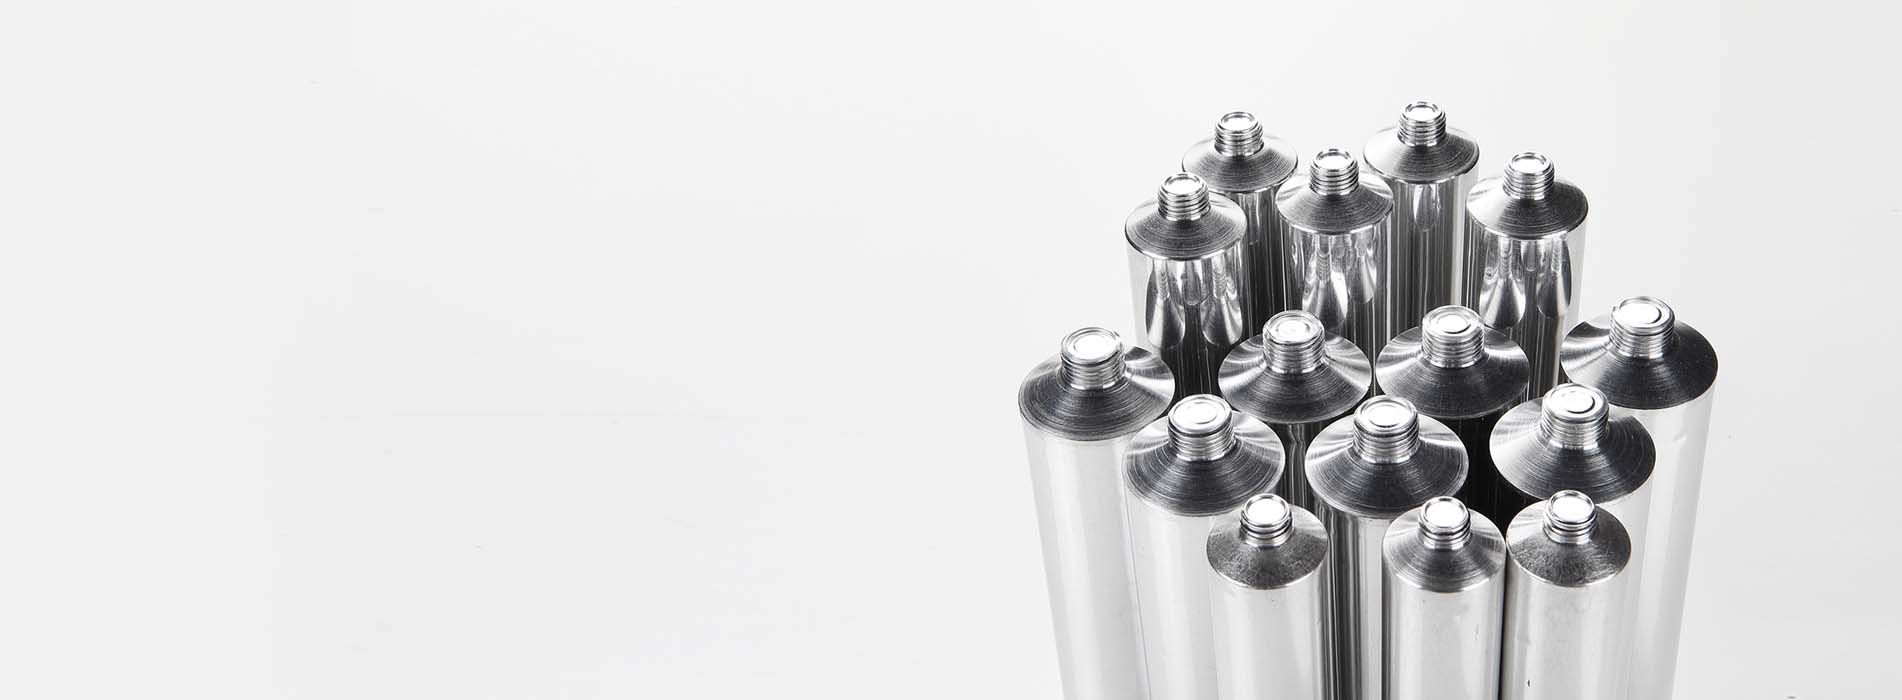 Fabricantes de envases de tubo de aluminio para farmacia, cosmética, alimentación y estuches de puros